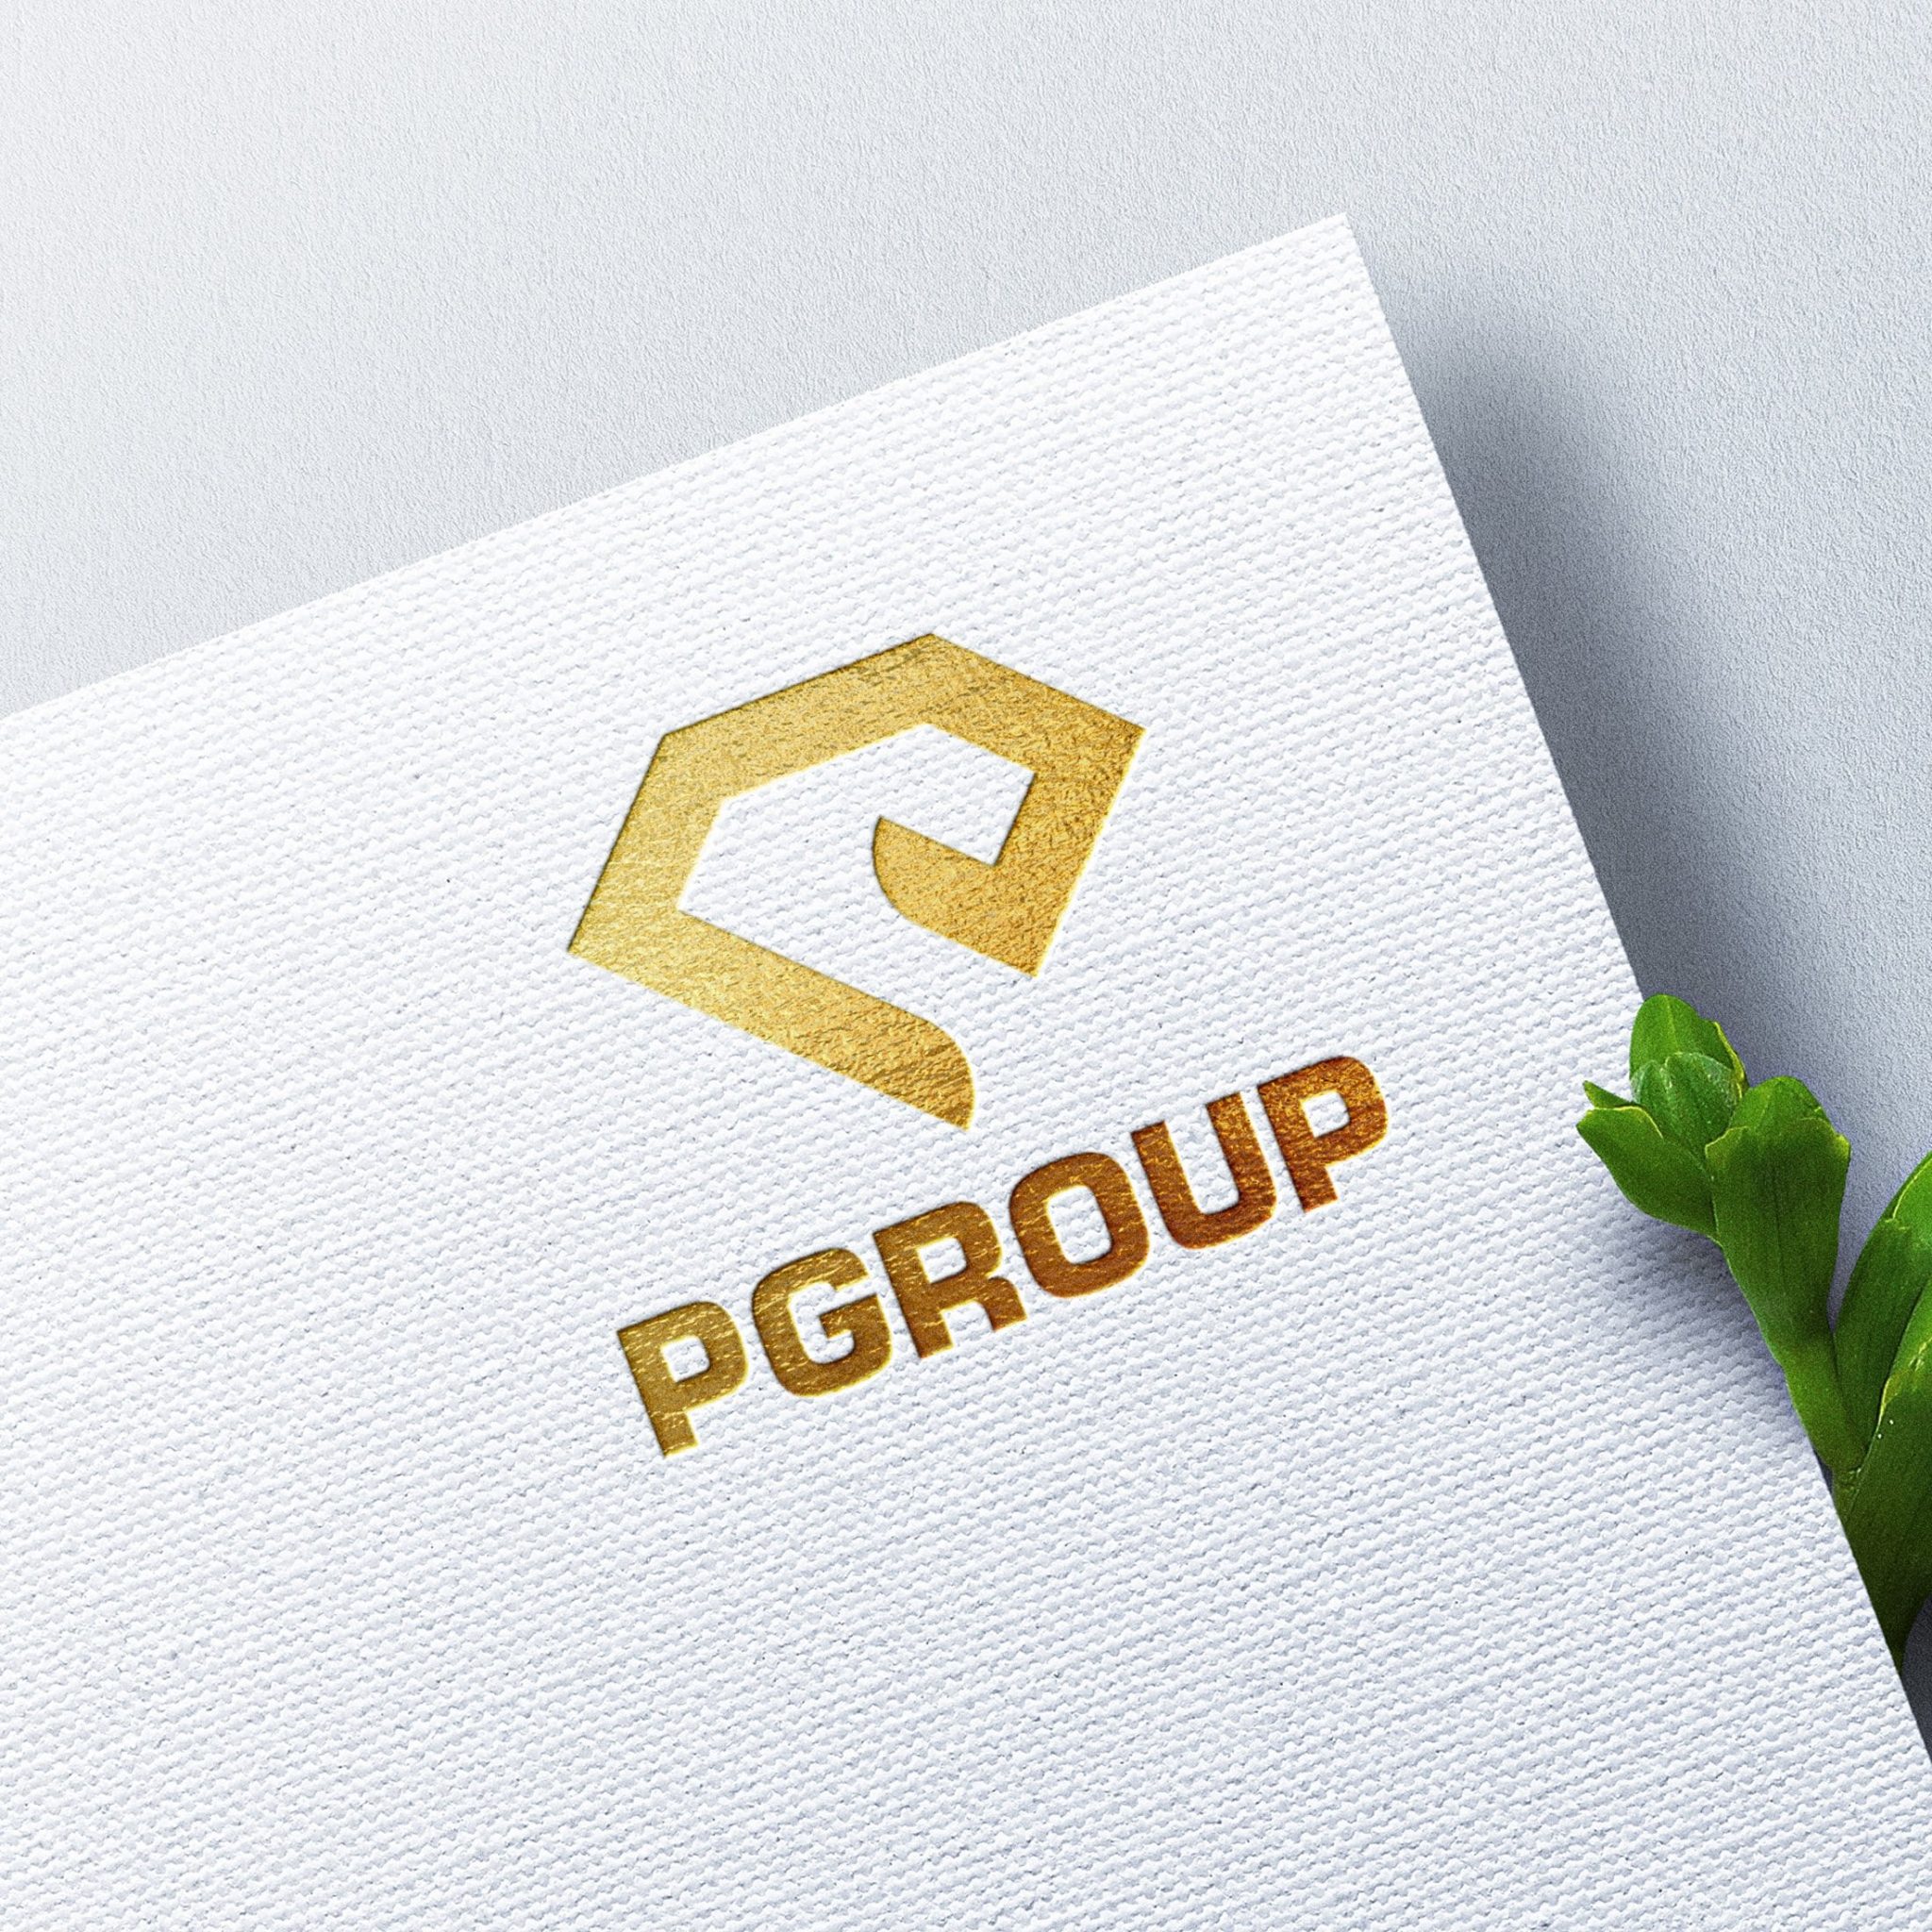 Thiết kế logo tập đoàn P Group